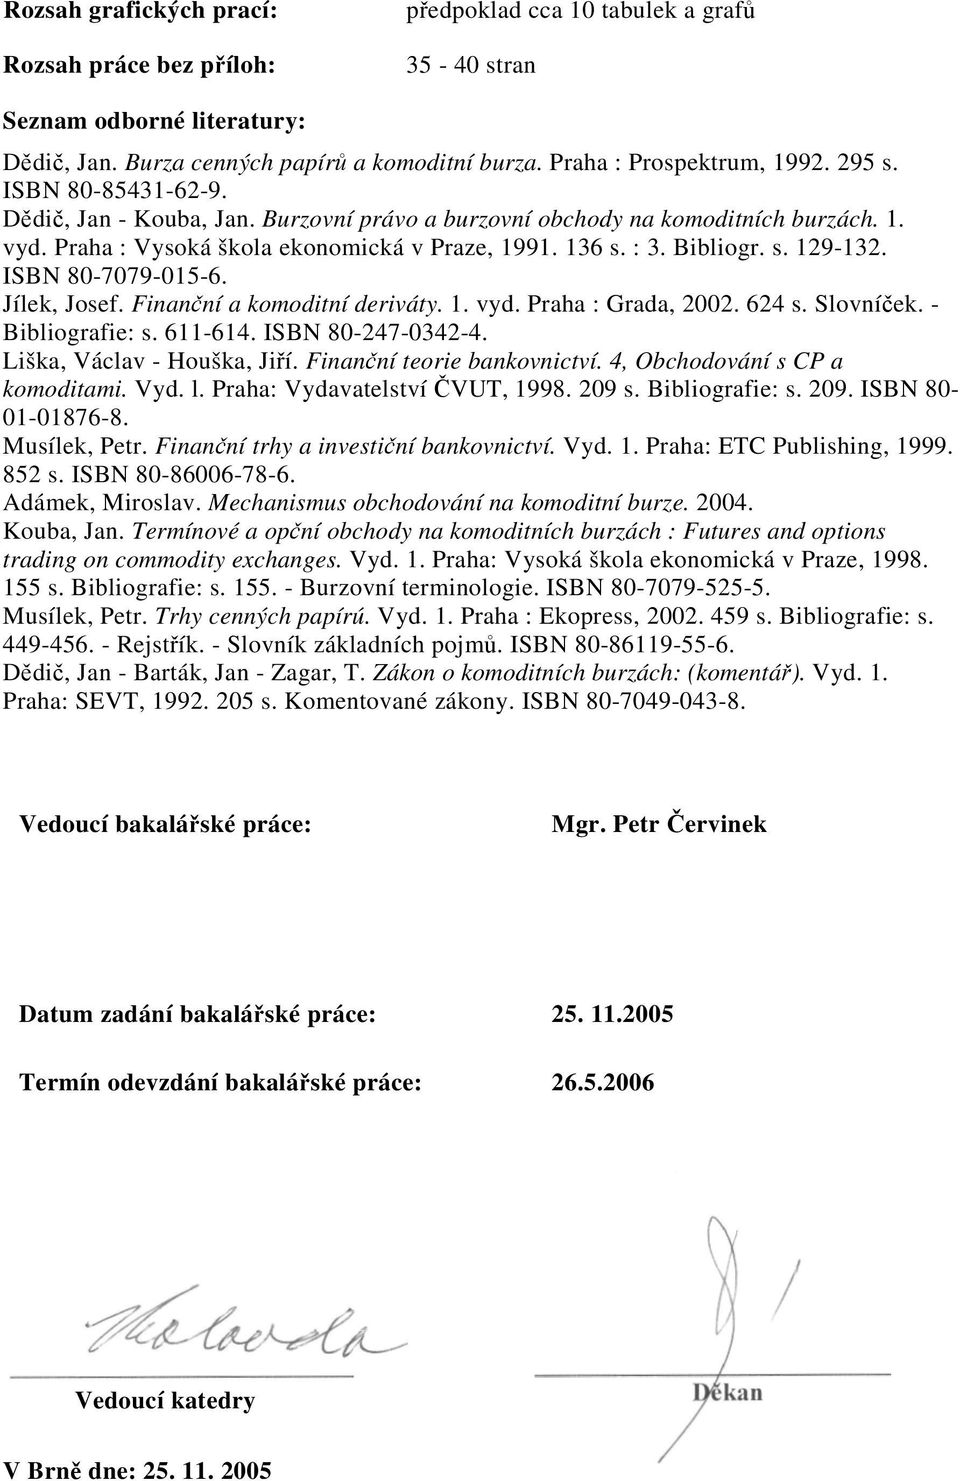 : 3. Bibliogr. s. 129-132. ISBN 80-7079-015-6. Jílek, Josef. Finanční a komoditní deriváty. 1. vyd. Praha : Grada, 2002. 624 s. Slovníček. - Bibliografie: s. 611-614. ISBN 80-247-0342-4.